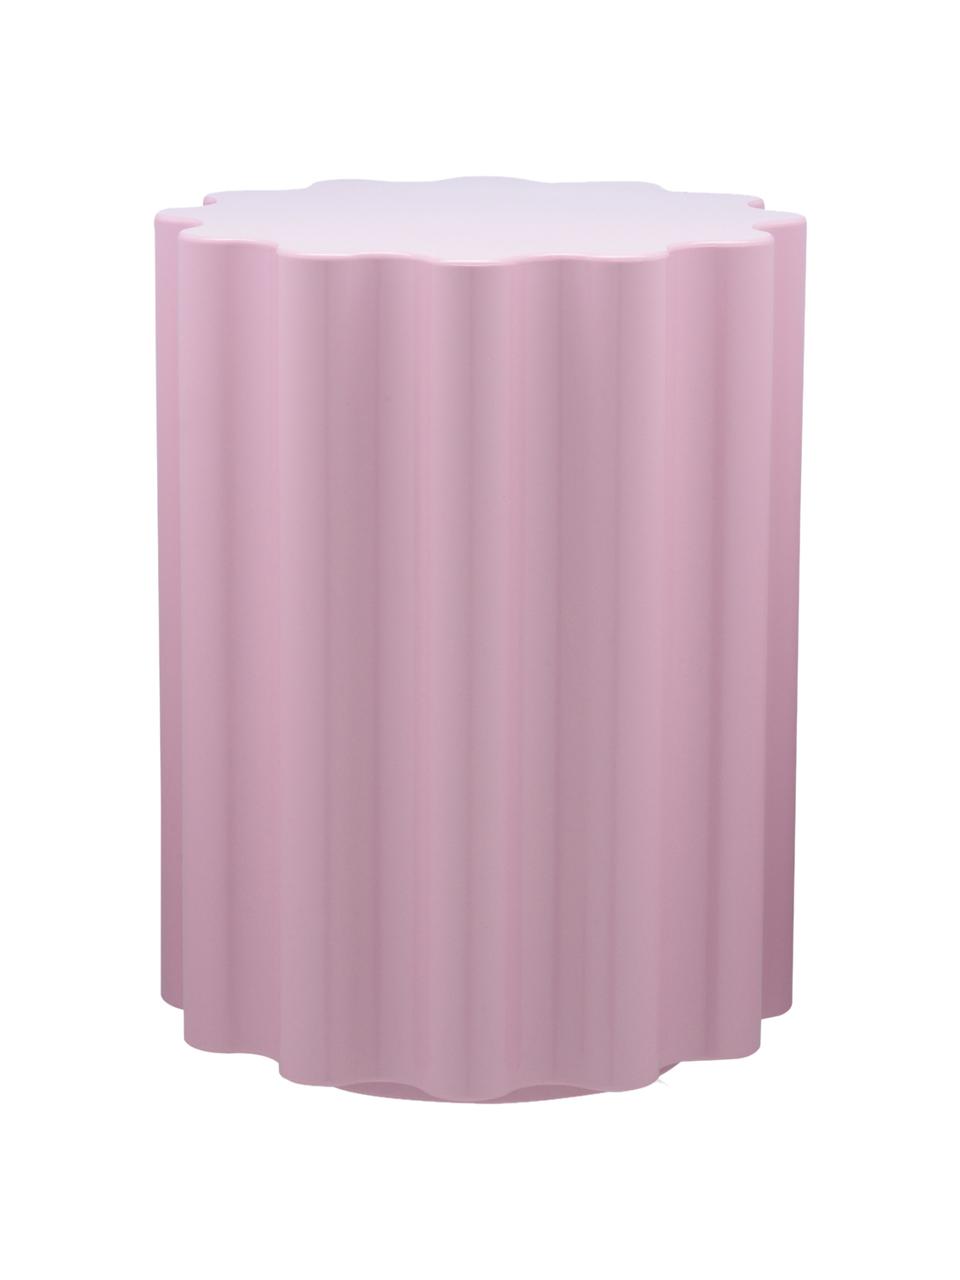 Ronde bijzettafel Colonna in roze, Thermoplastisch technopolymeer gemaakt van gerecycled industrieel afval, Greenguard-gecertificeerd, Roze, Ø 35 x H 46 cm